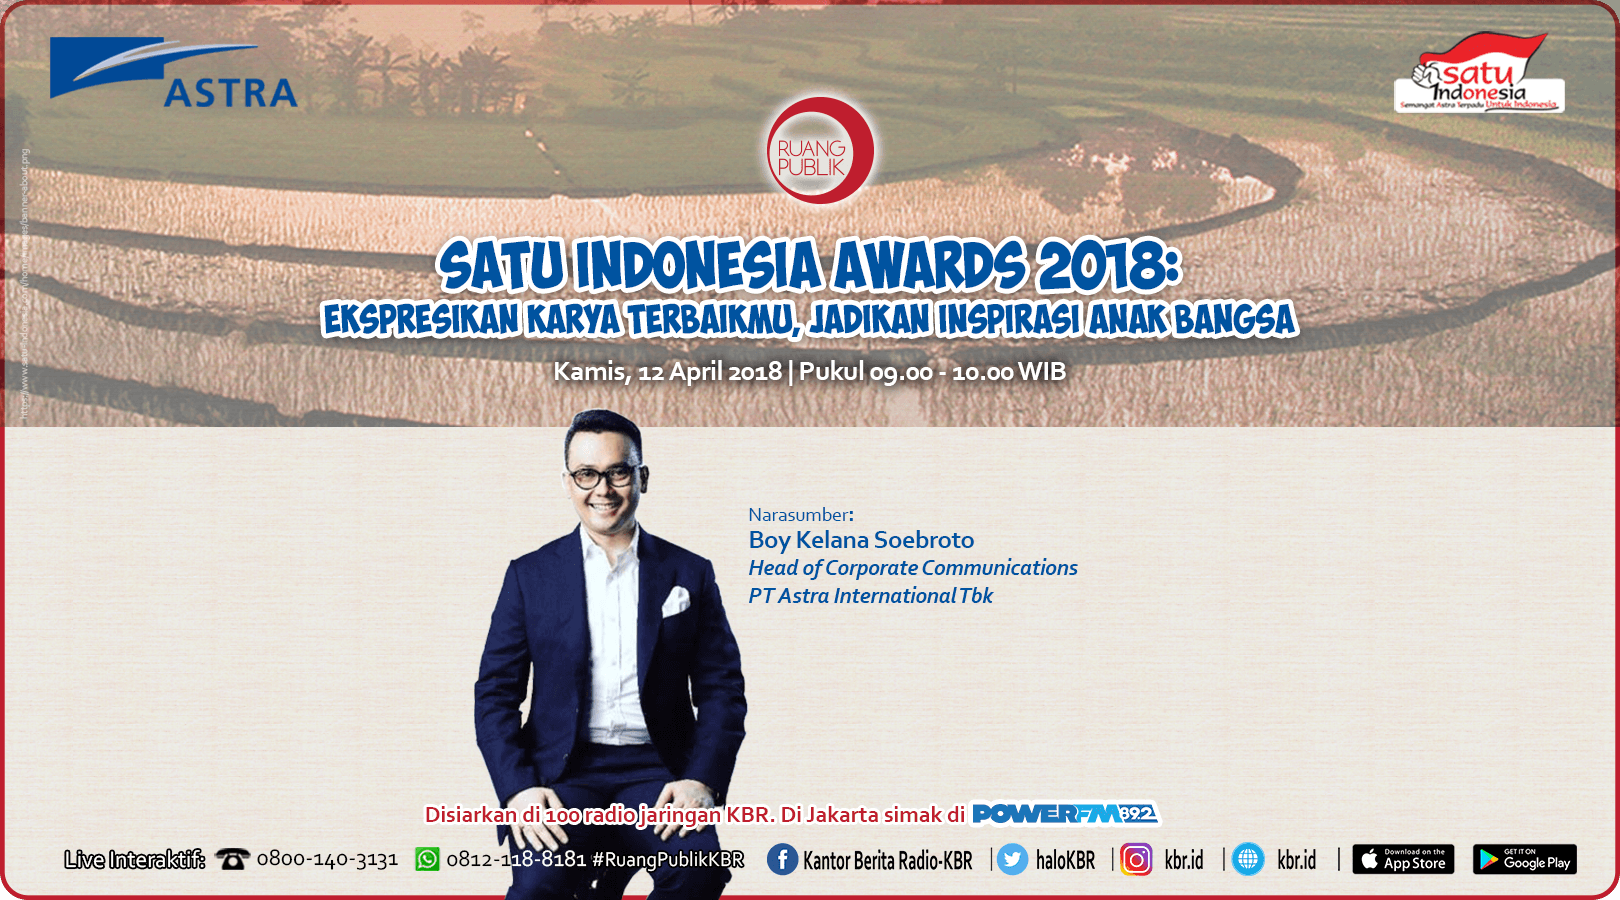 SATU Indonesia Awards 2018, ekspresikan karya terbaikmu, jadikan inspirasi anak bangsa.